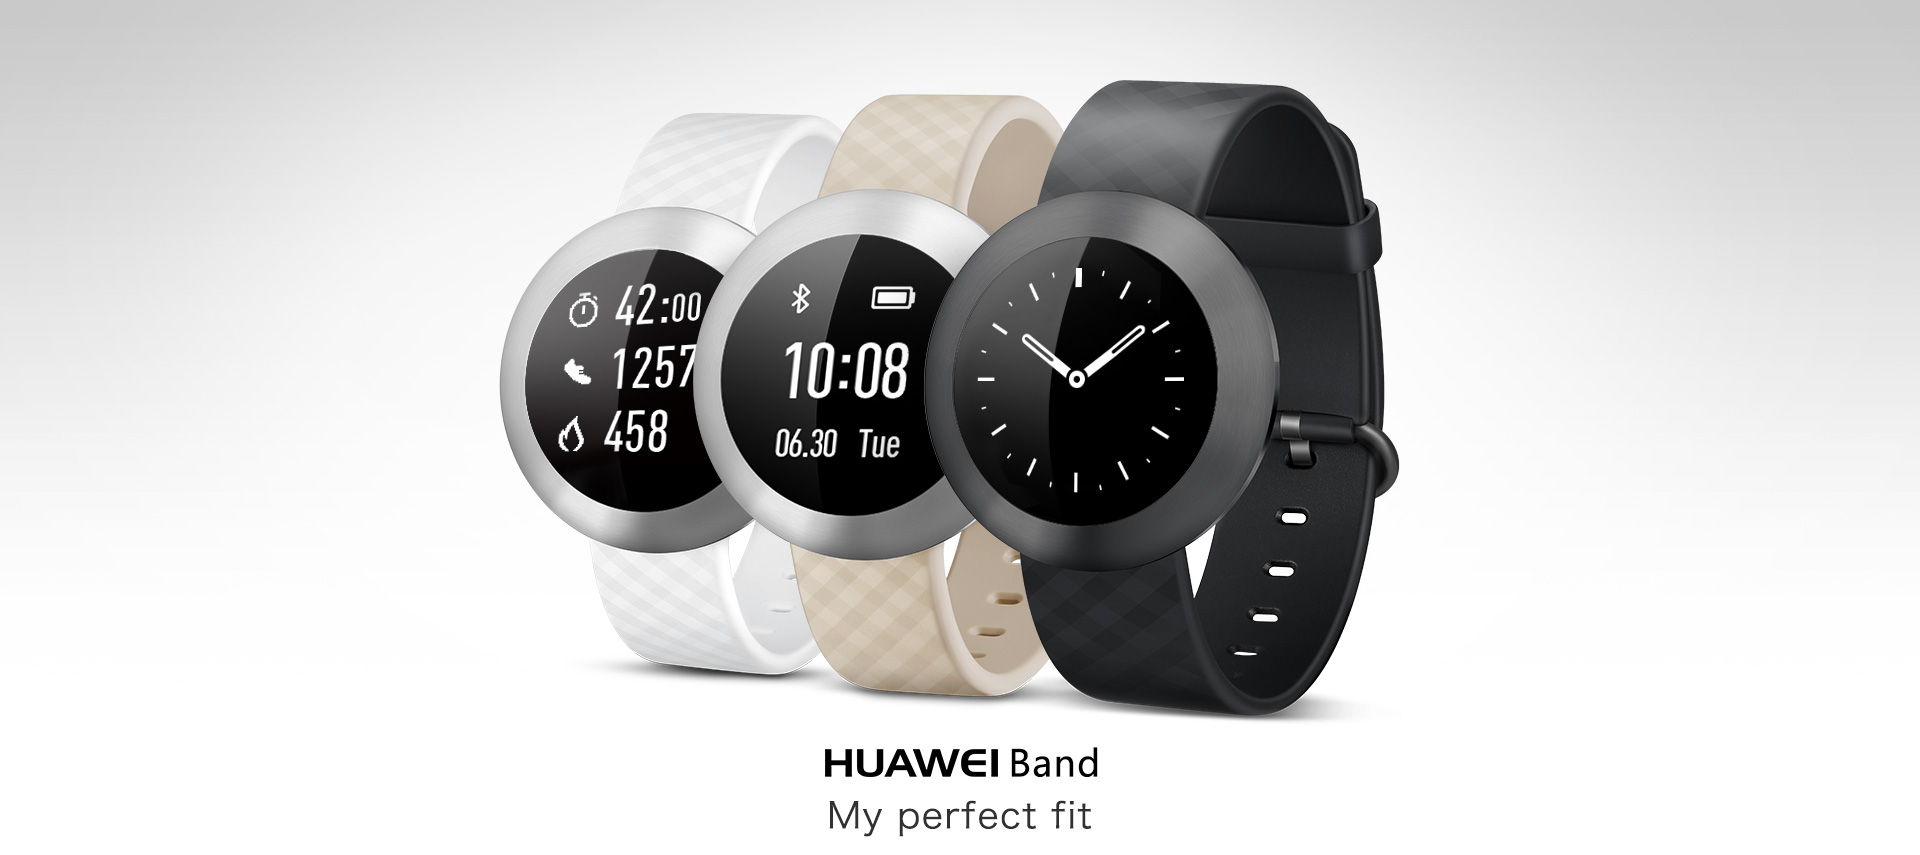 Хуавей бэнд 8. Часы Хуавей бэнд 8. Huawei Band 1. Умные часы Huawei Band 8. Как подключить часы к телефону huawei band